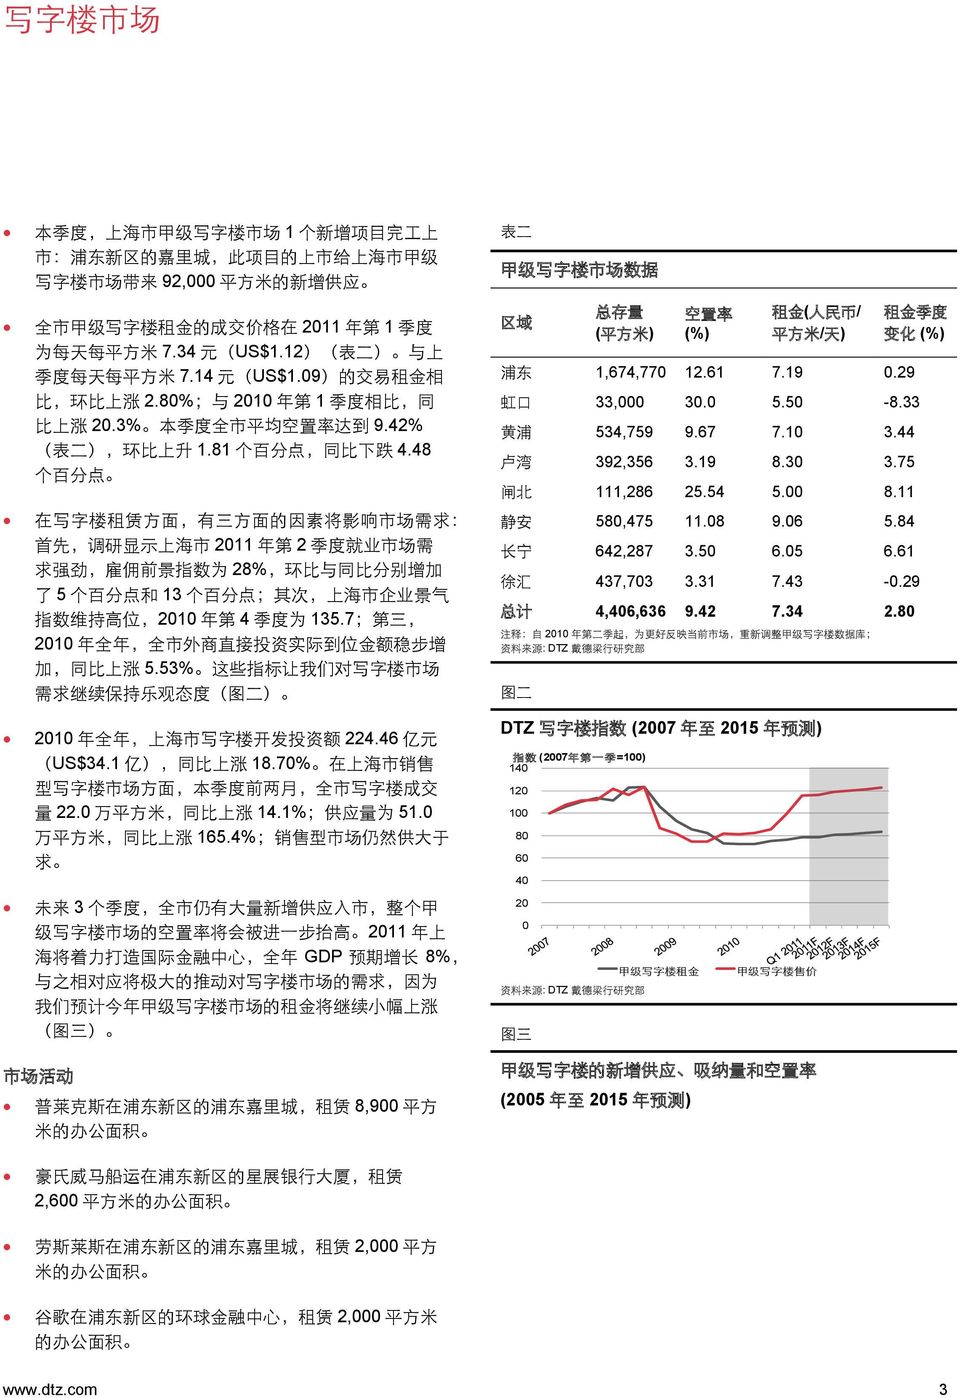 48 个 百 分 点 在 写 字 楼 租 赁 方 面, 有 三 方 面 的 因 素 将 影 响 市 场 需 求 : 首 先, 调 研 显 示 上 海 市 2011 年 第 2 季 度 就 业 市 场 需 求 强 劲, 雇 佣 前 景 指 数 为 28%, 环 比 与 同 比 分 别 增 加 了 5 个 百 分 点 和 13 个 百 分 点 ; 其 次, 上 海 市 企 业 景 气 指 数 维 持